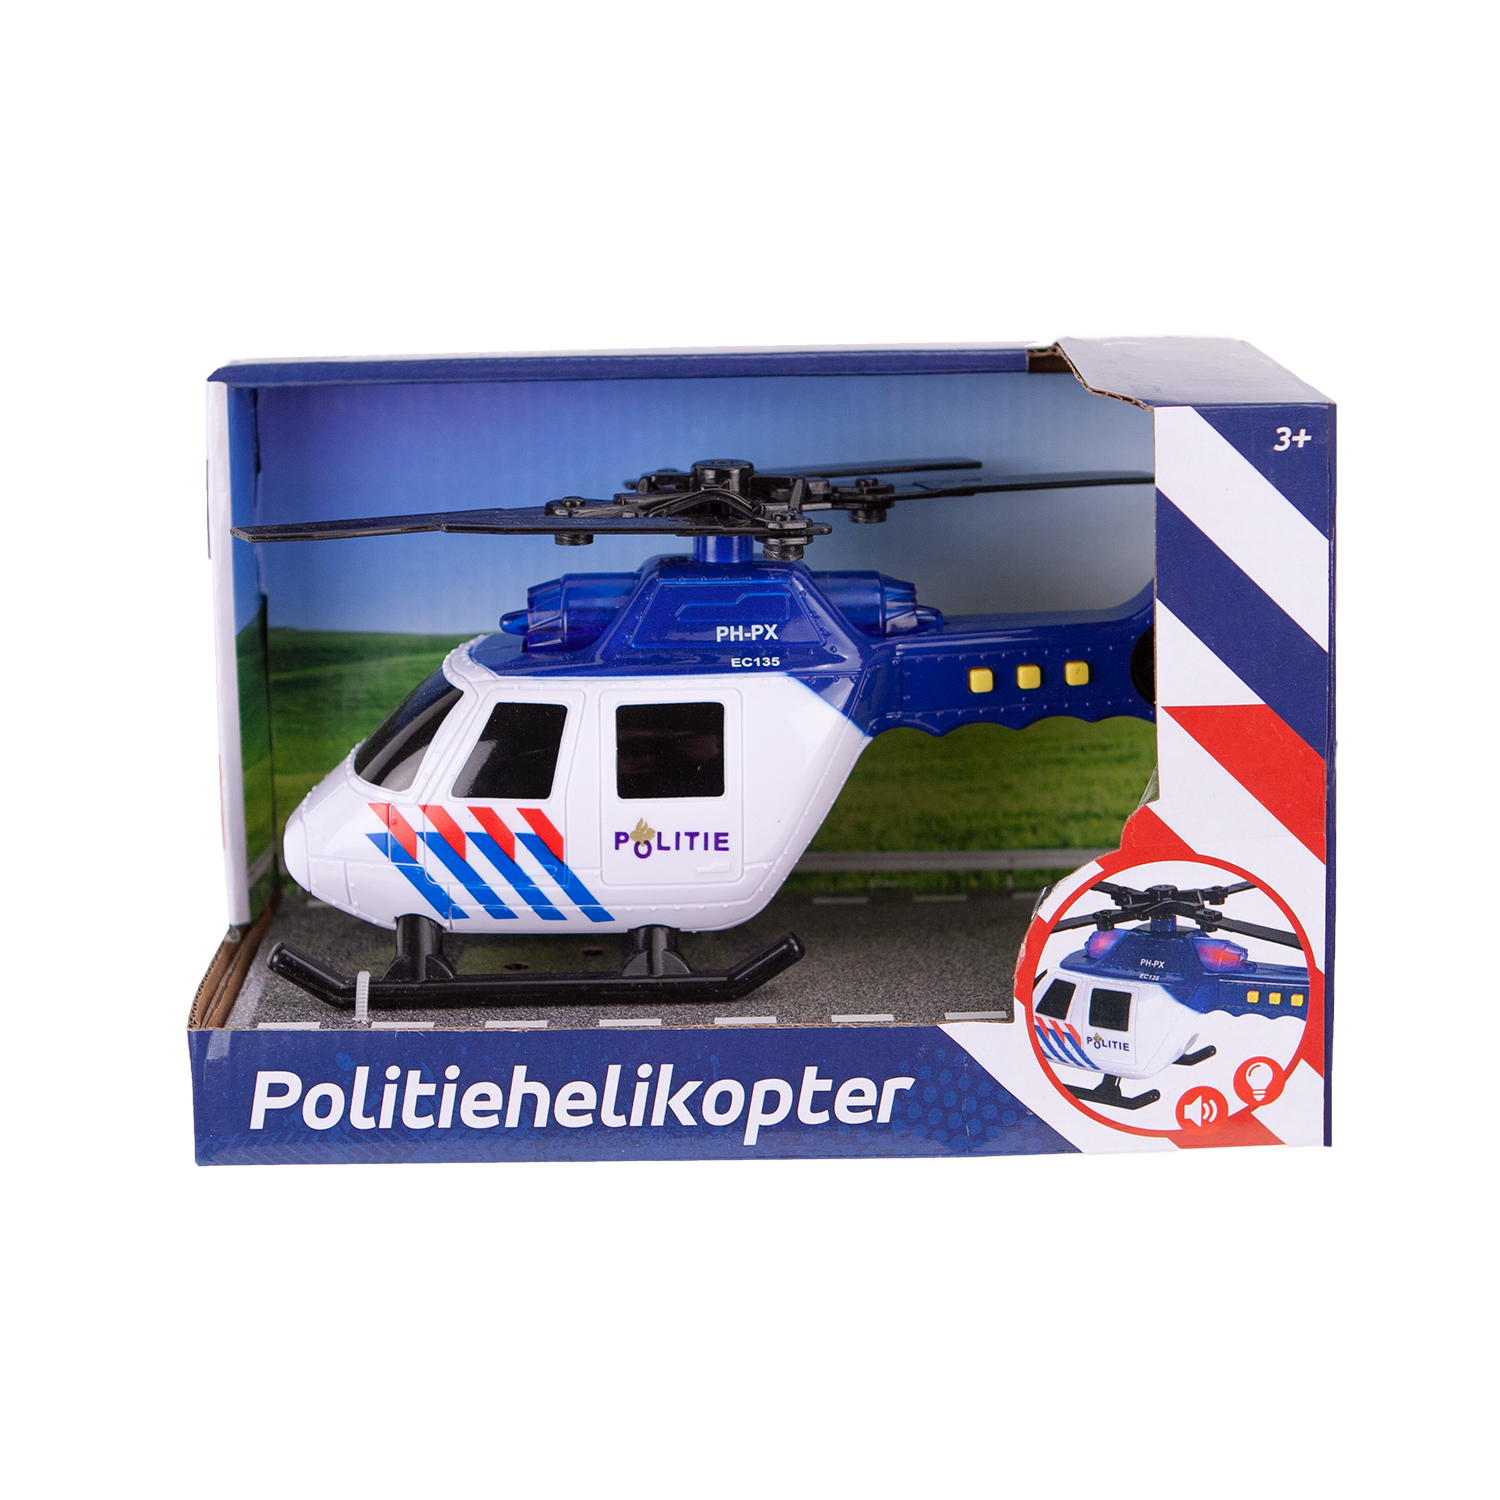 HELICOPTER POLITIE LICHT+GELUID - 341 2021